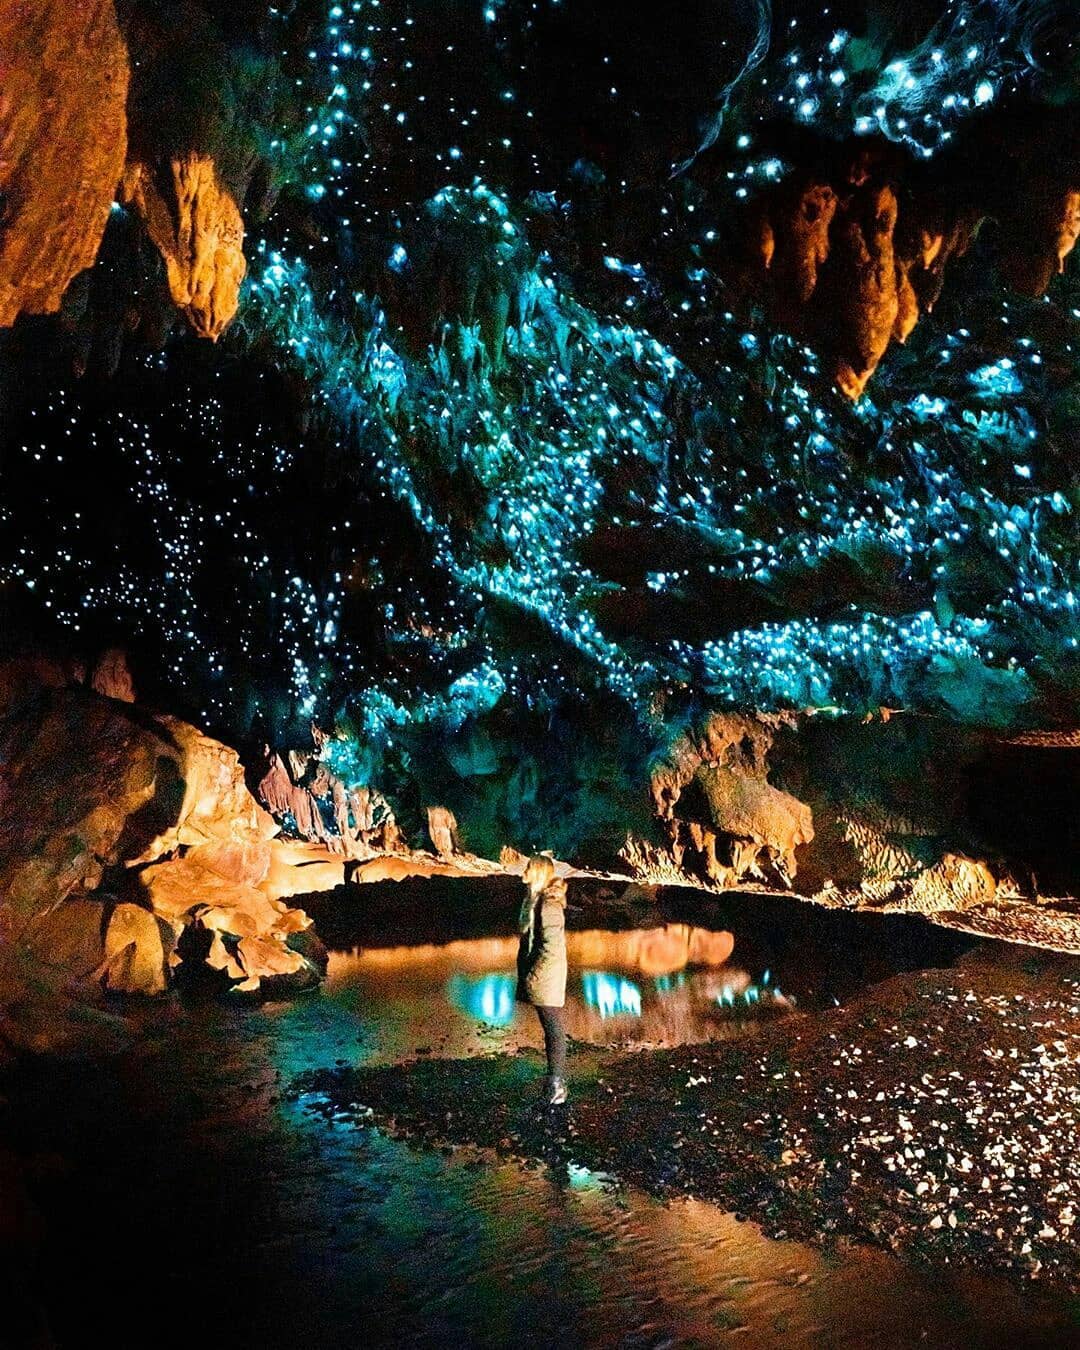 Ở độ sâu hơn 45m trong lòng đất, hang động Waitomo có cấu trúc, hình dáng độc đáo do sự tác động của mẹ thiên nhiên. Ảnh: @v1rtualtravel